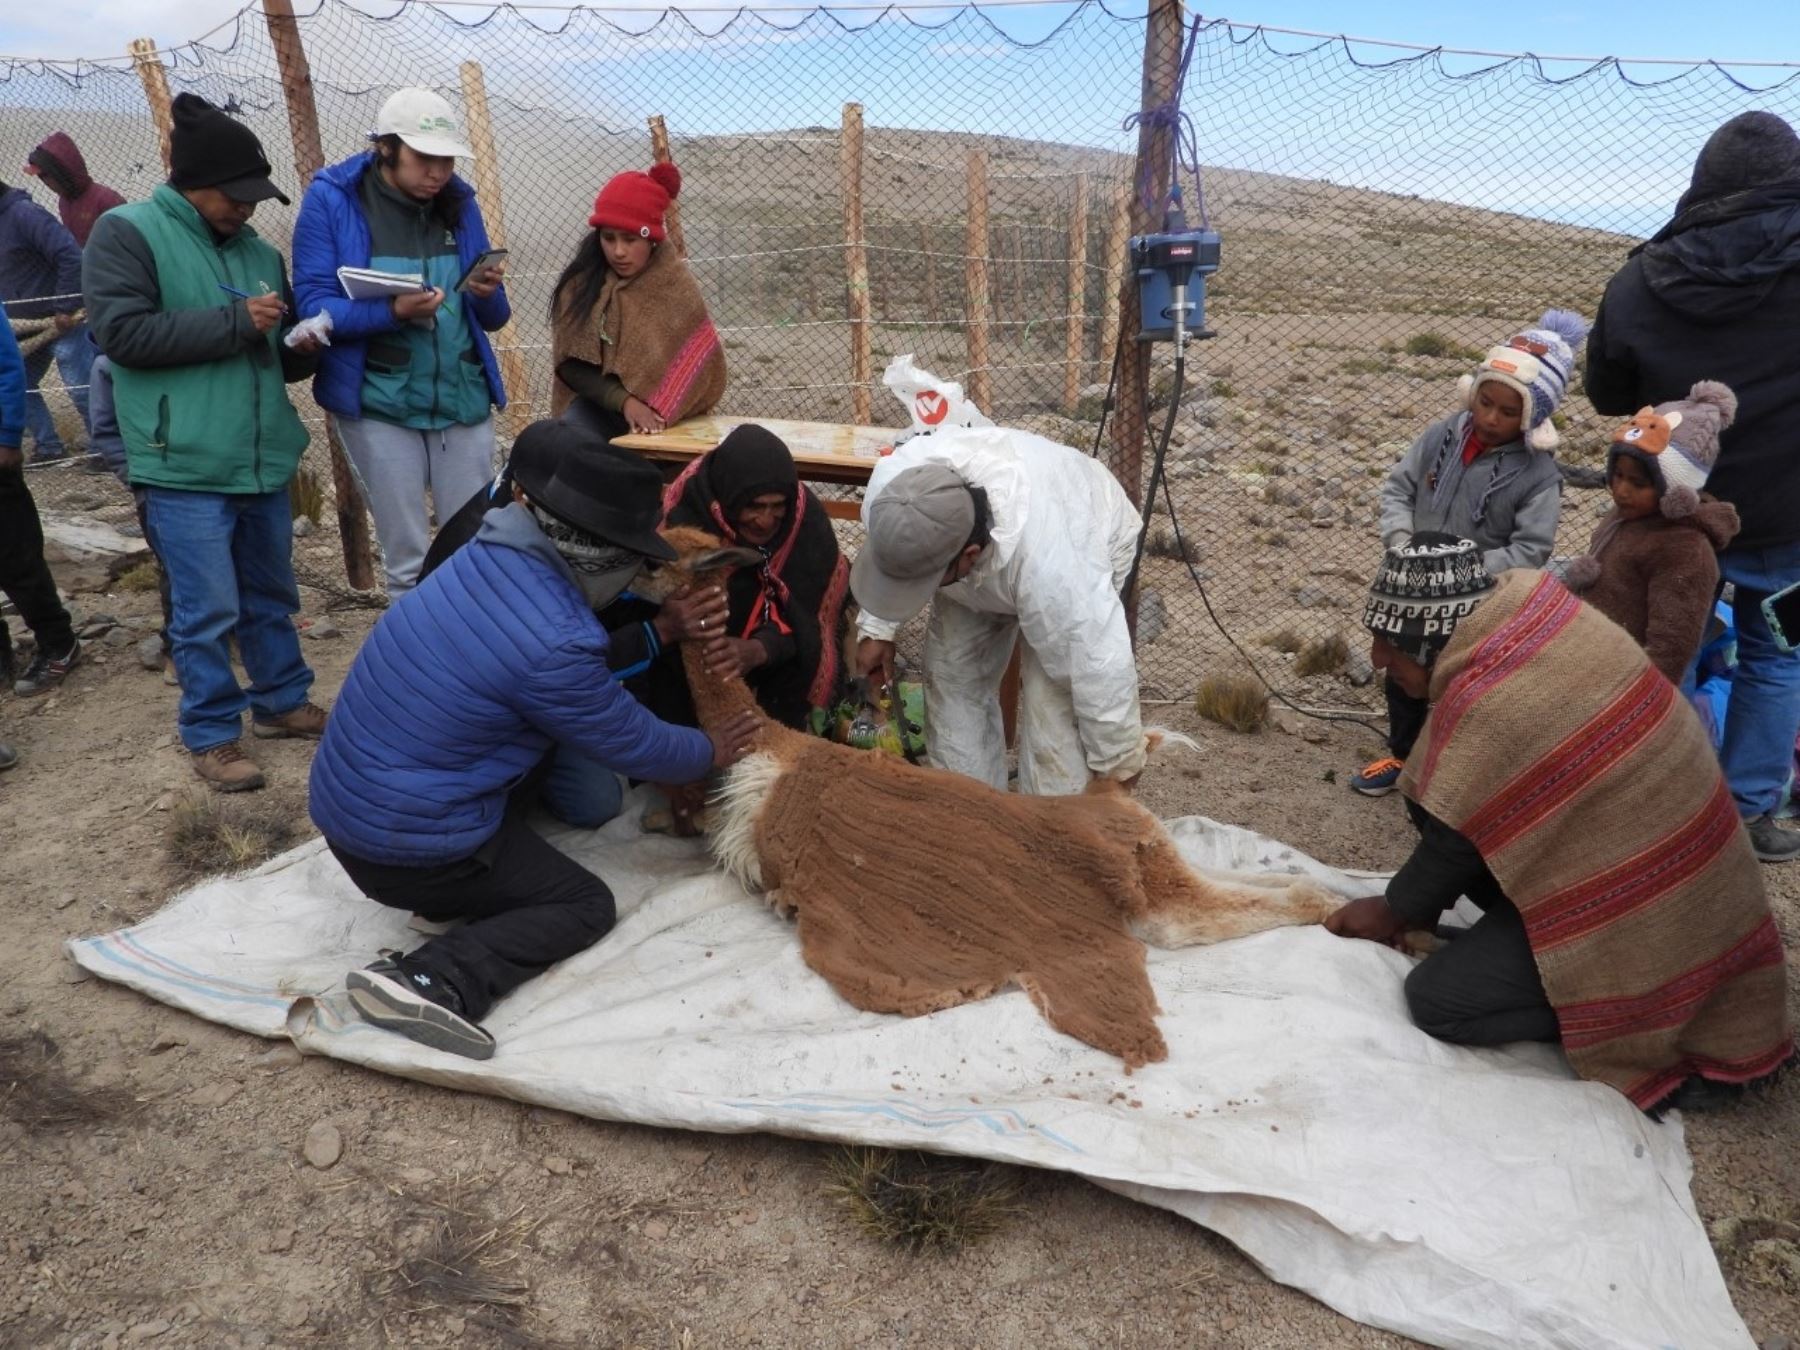 Pobladores de la comunidad campesina de Tauripampa, provincia de Yauyos, organizaron un chaccu, esquilaron a 250 vicuñas y obtuvieron 100 sacos de la cotizada fibra. ANDINA/Difusión